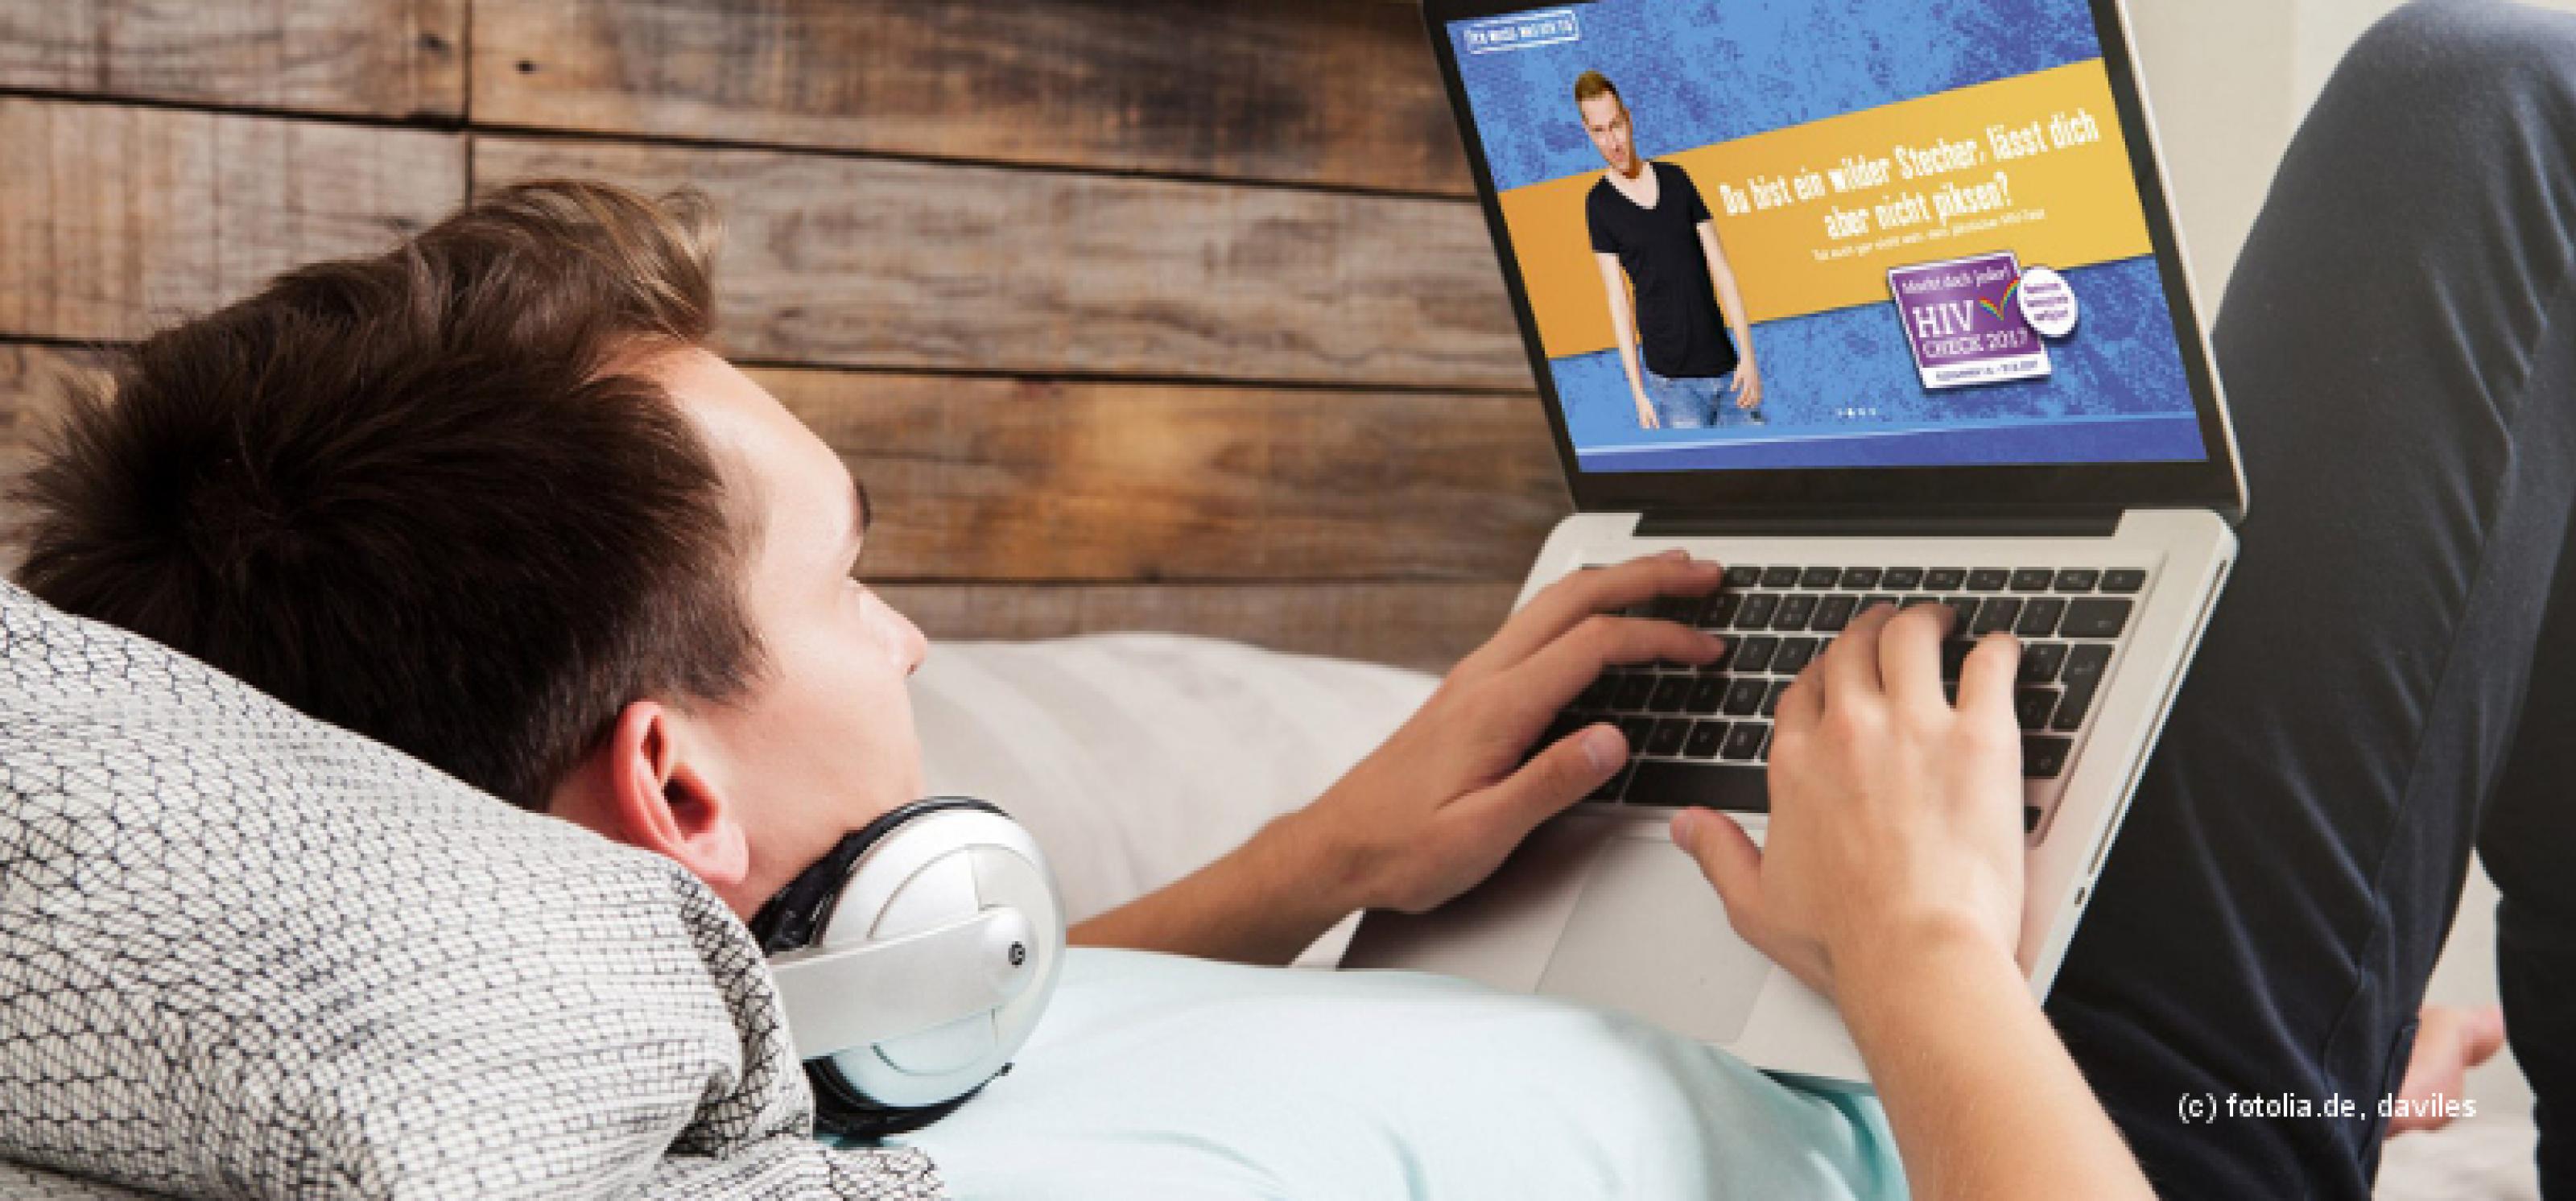 Junger Mann mit Kopfhörern liegt auf einem Bett und surft mit einem Laptop im Internet. Auf dem Laptop-Bildschirm ist die Website www.macht-doch-jeder.de zu sehen.